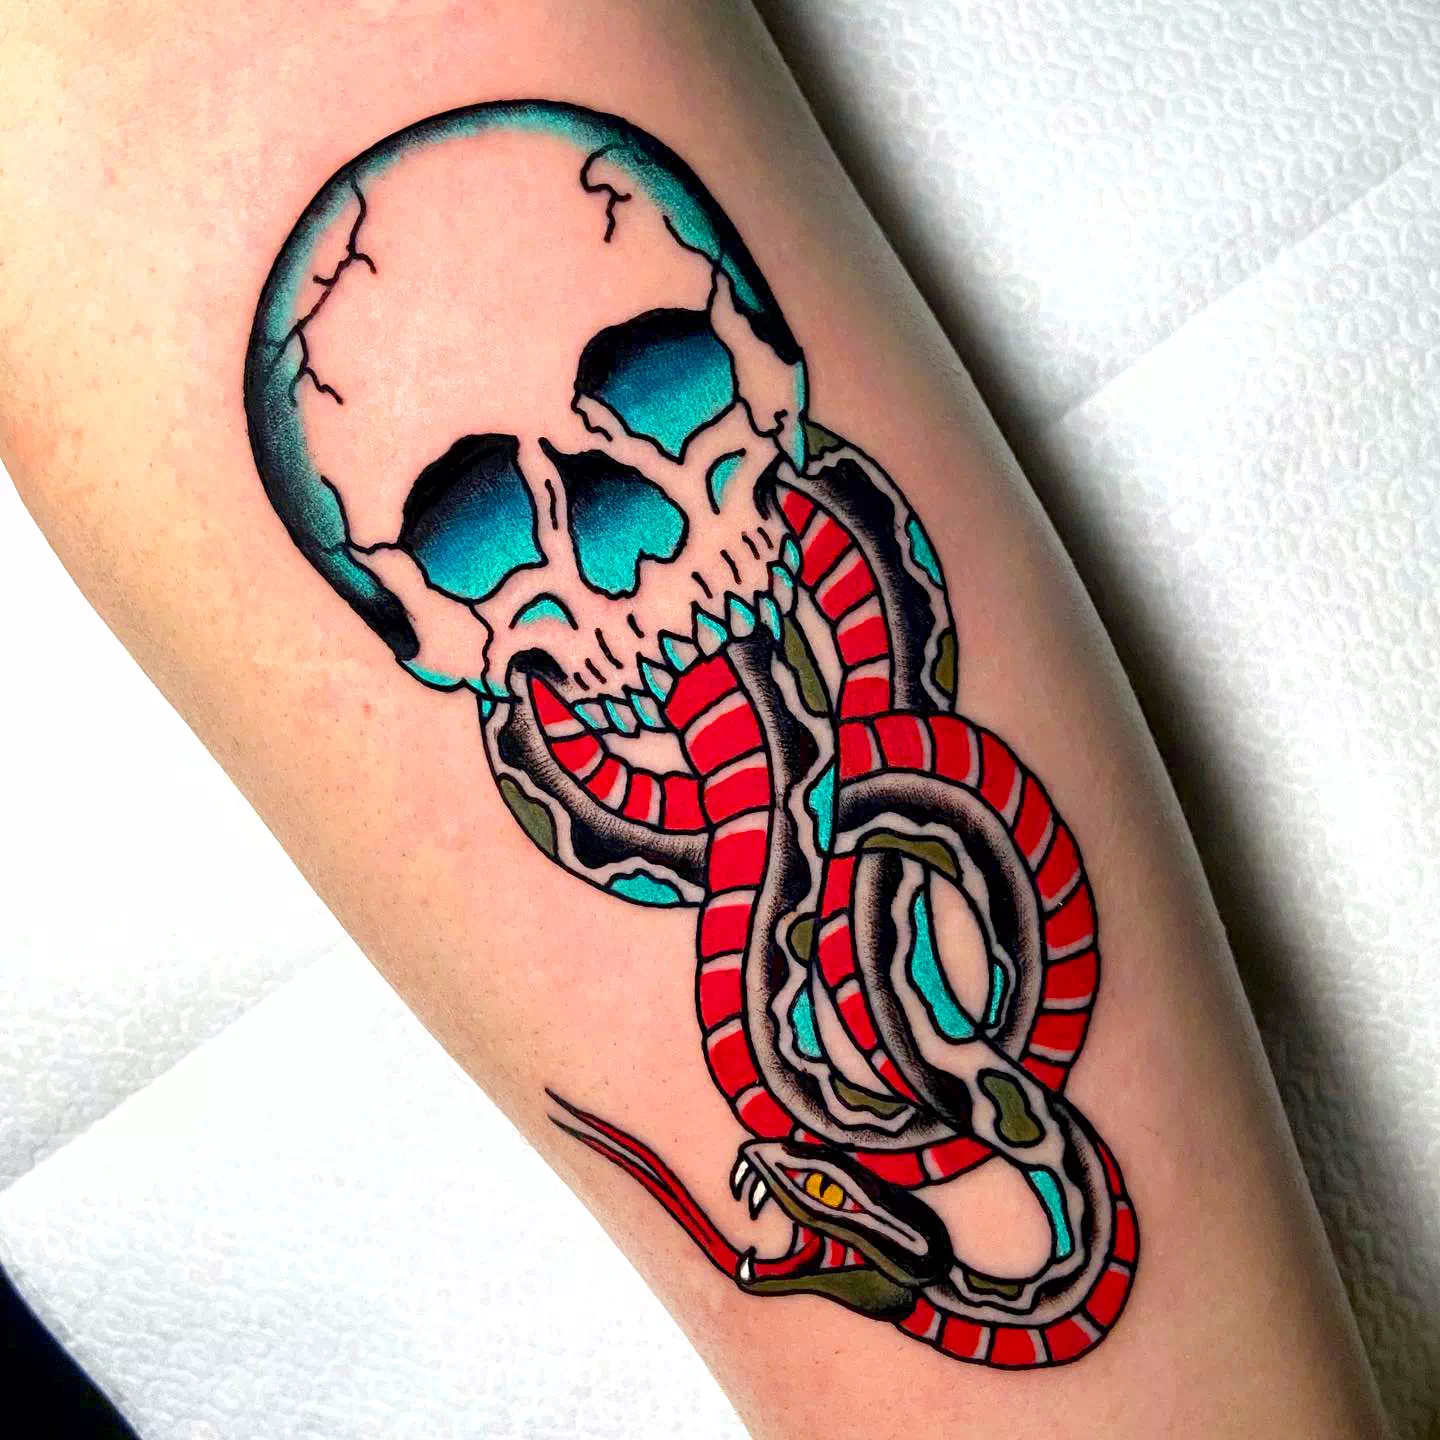 Tatuaje de un mortífago inspirado en los dibujos animados